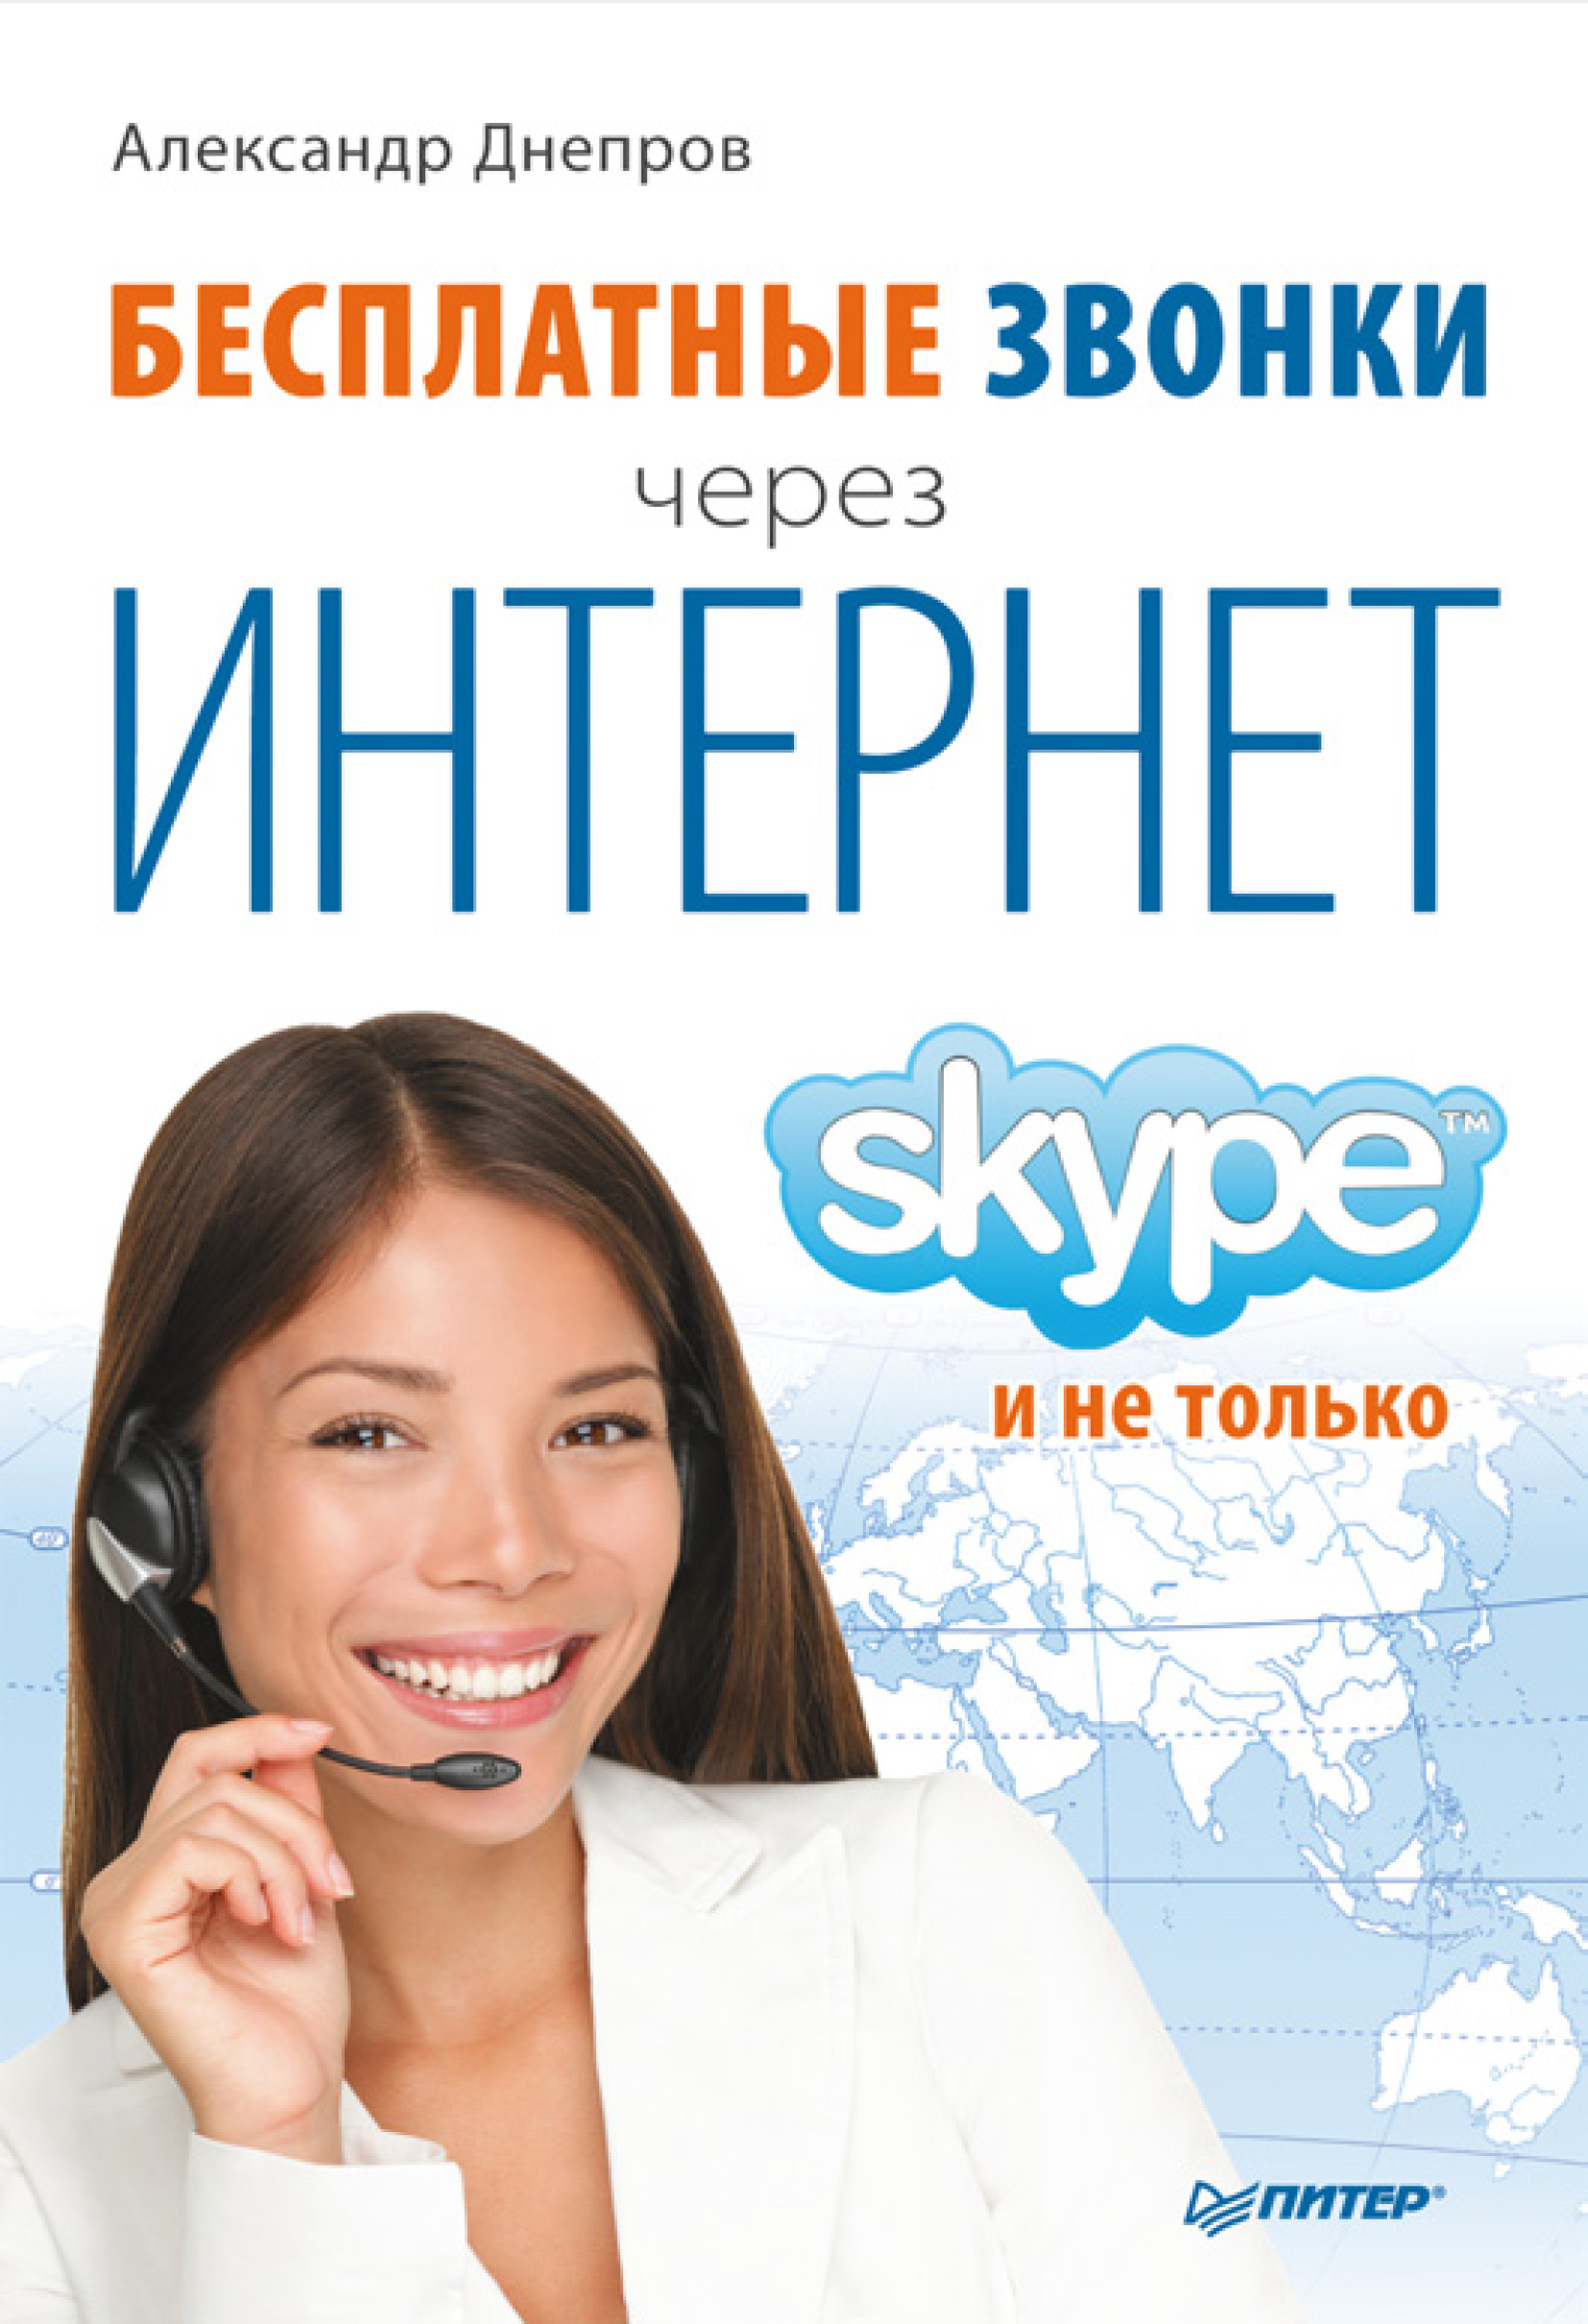 Книга  Бесплатные звонки через Интернет. Skype и не только созданная Александр Днепров может относится к жанру интернет, программы. Стоимость электронной книги Бесплатные звонки через Интернет. Skype и не только с идентификатором 421932 составляет 149.00 руб.